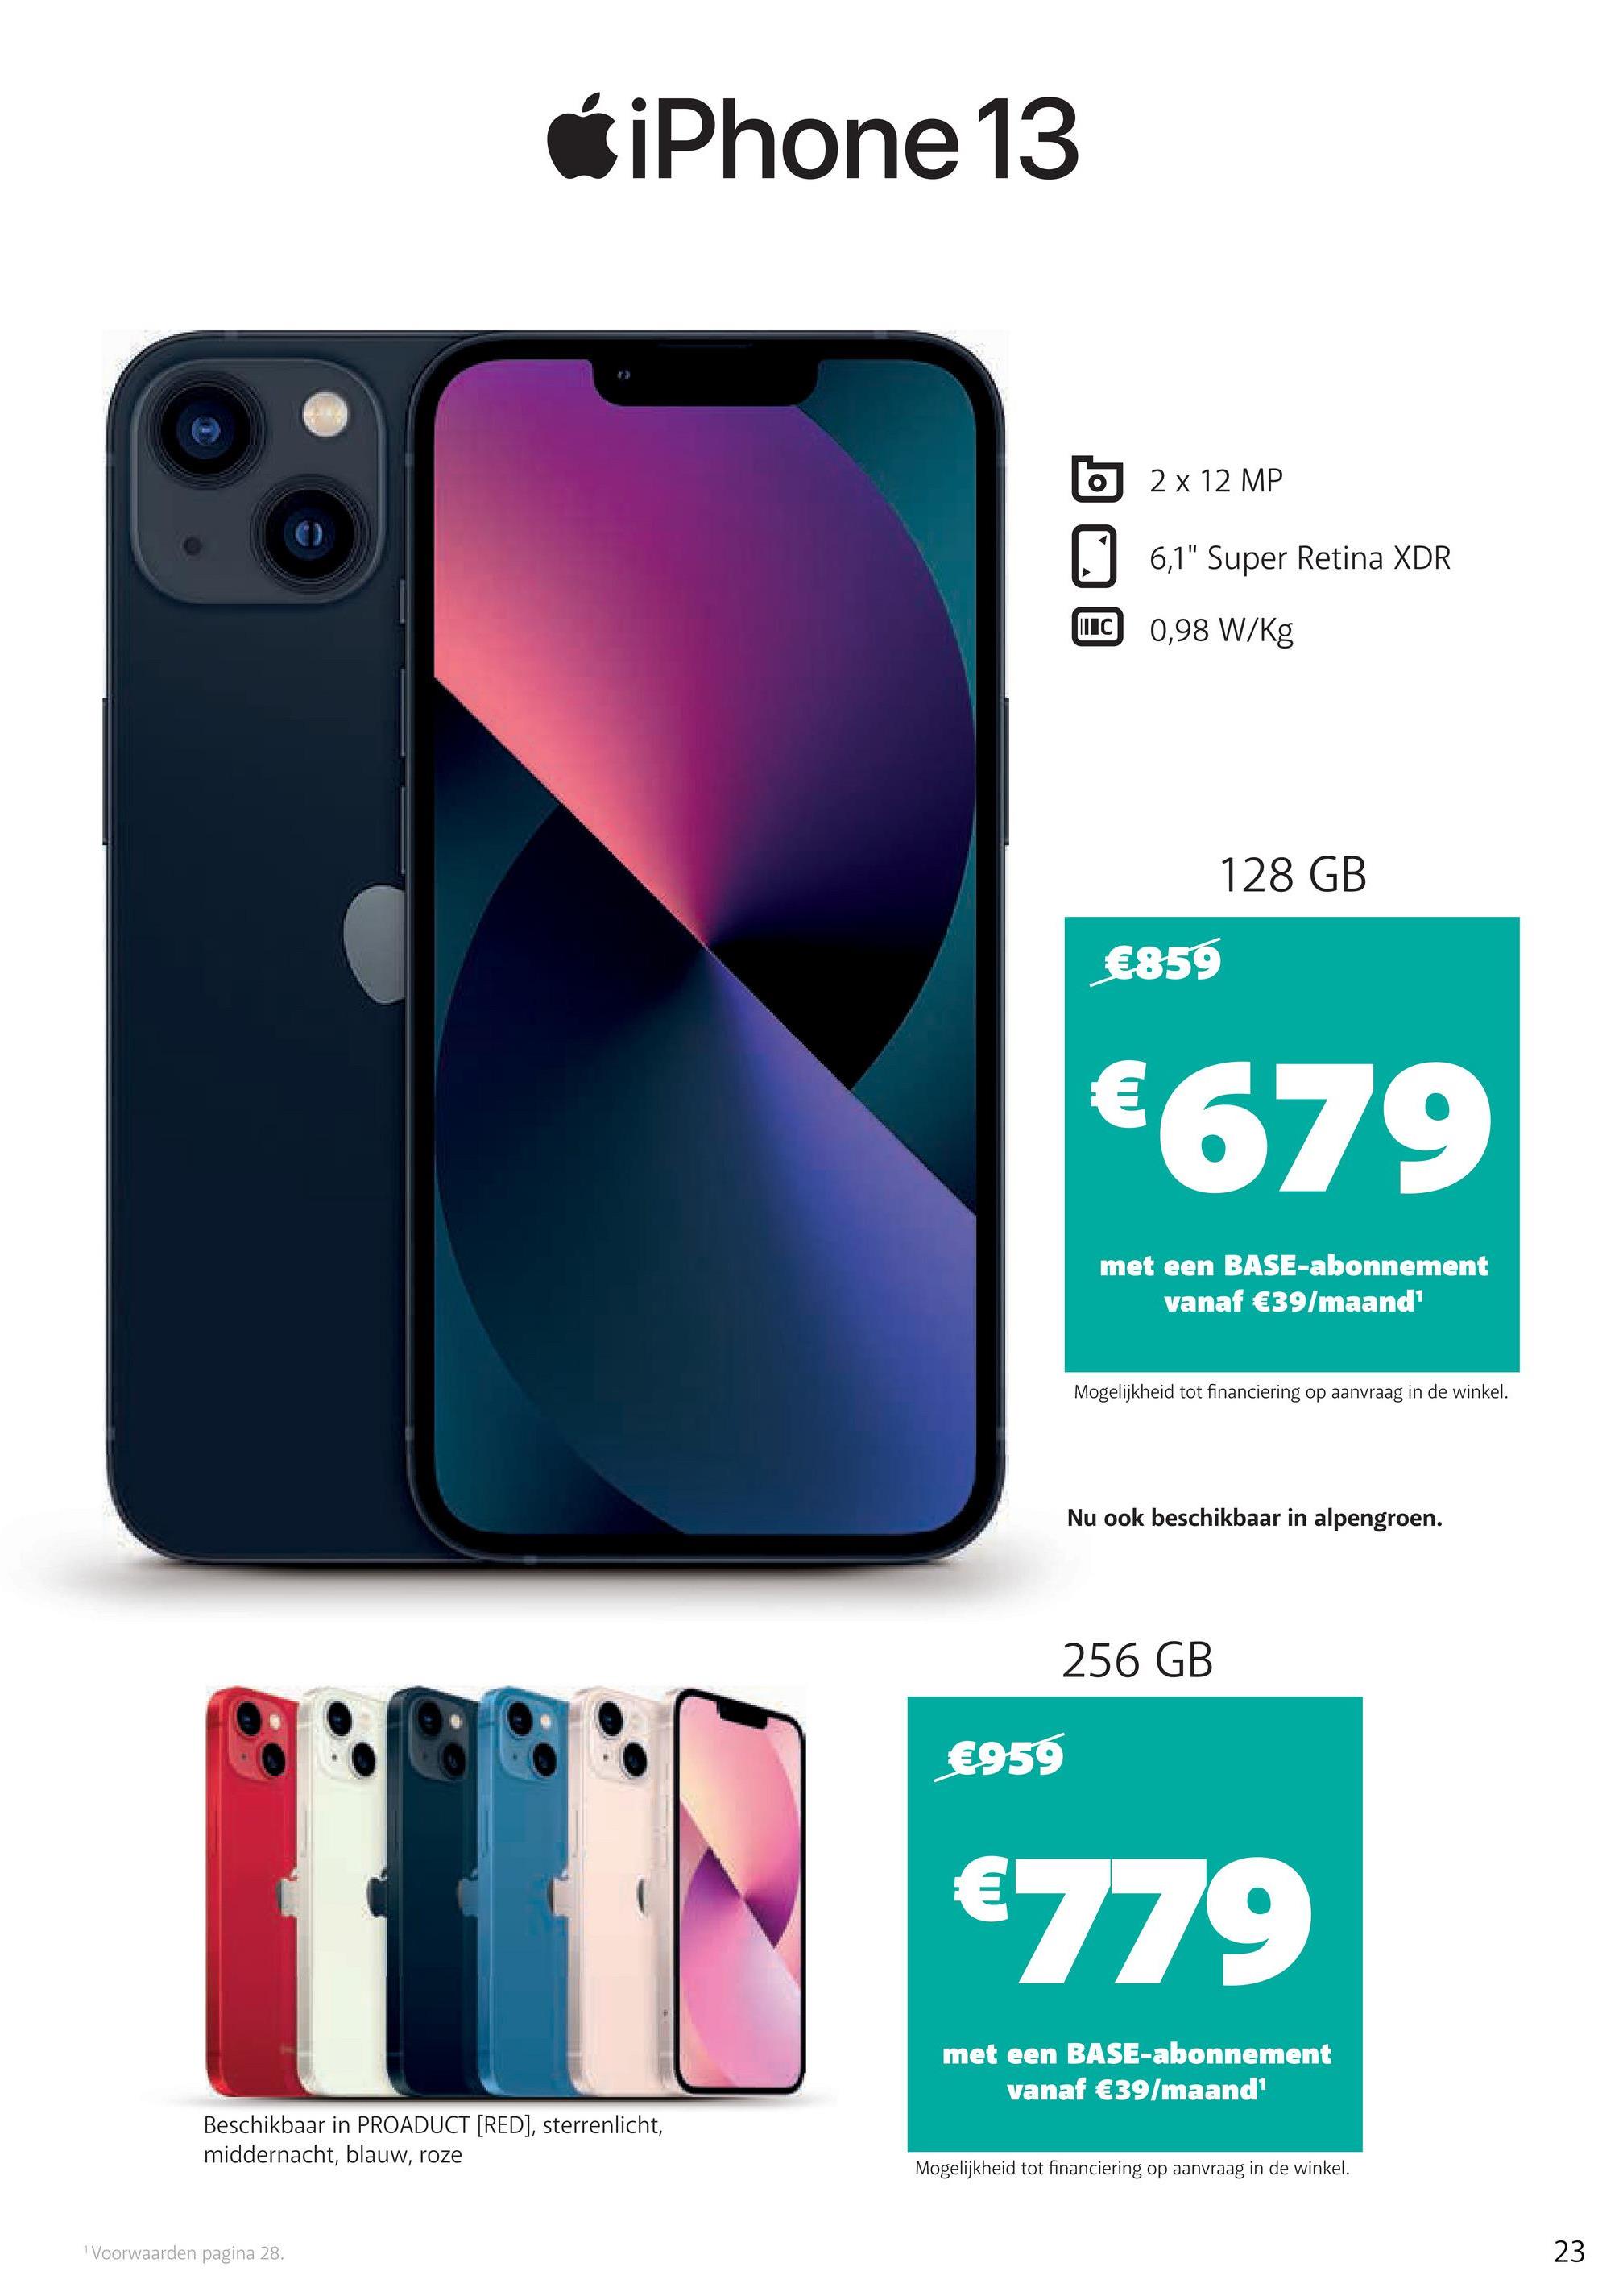 Ć iPhone 13
2 x 12 MP
6,1" Super Retina XDR
LLC 0,98 W/kg
128 GB
€859
€679
met een BASE-abonnement
vanaf €39/maand
Mogelijkheid tot financiering op aanvraag in de winkel.
Nu ook beschikbaar in alpengroen.
256 GB
€959
€779
met een BASE-abonnement
vanaf €39/maand
Beschikbaar in PROADUCT (RED), sterrenlicht,
middernacht, blauw, roze
Mogelijkheid tot financiering op aanvraag in de winkel.
Voorwaarden pagina 28.
23
